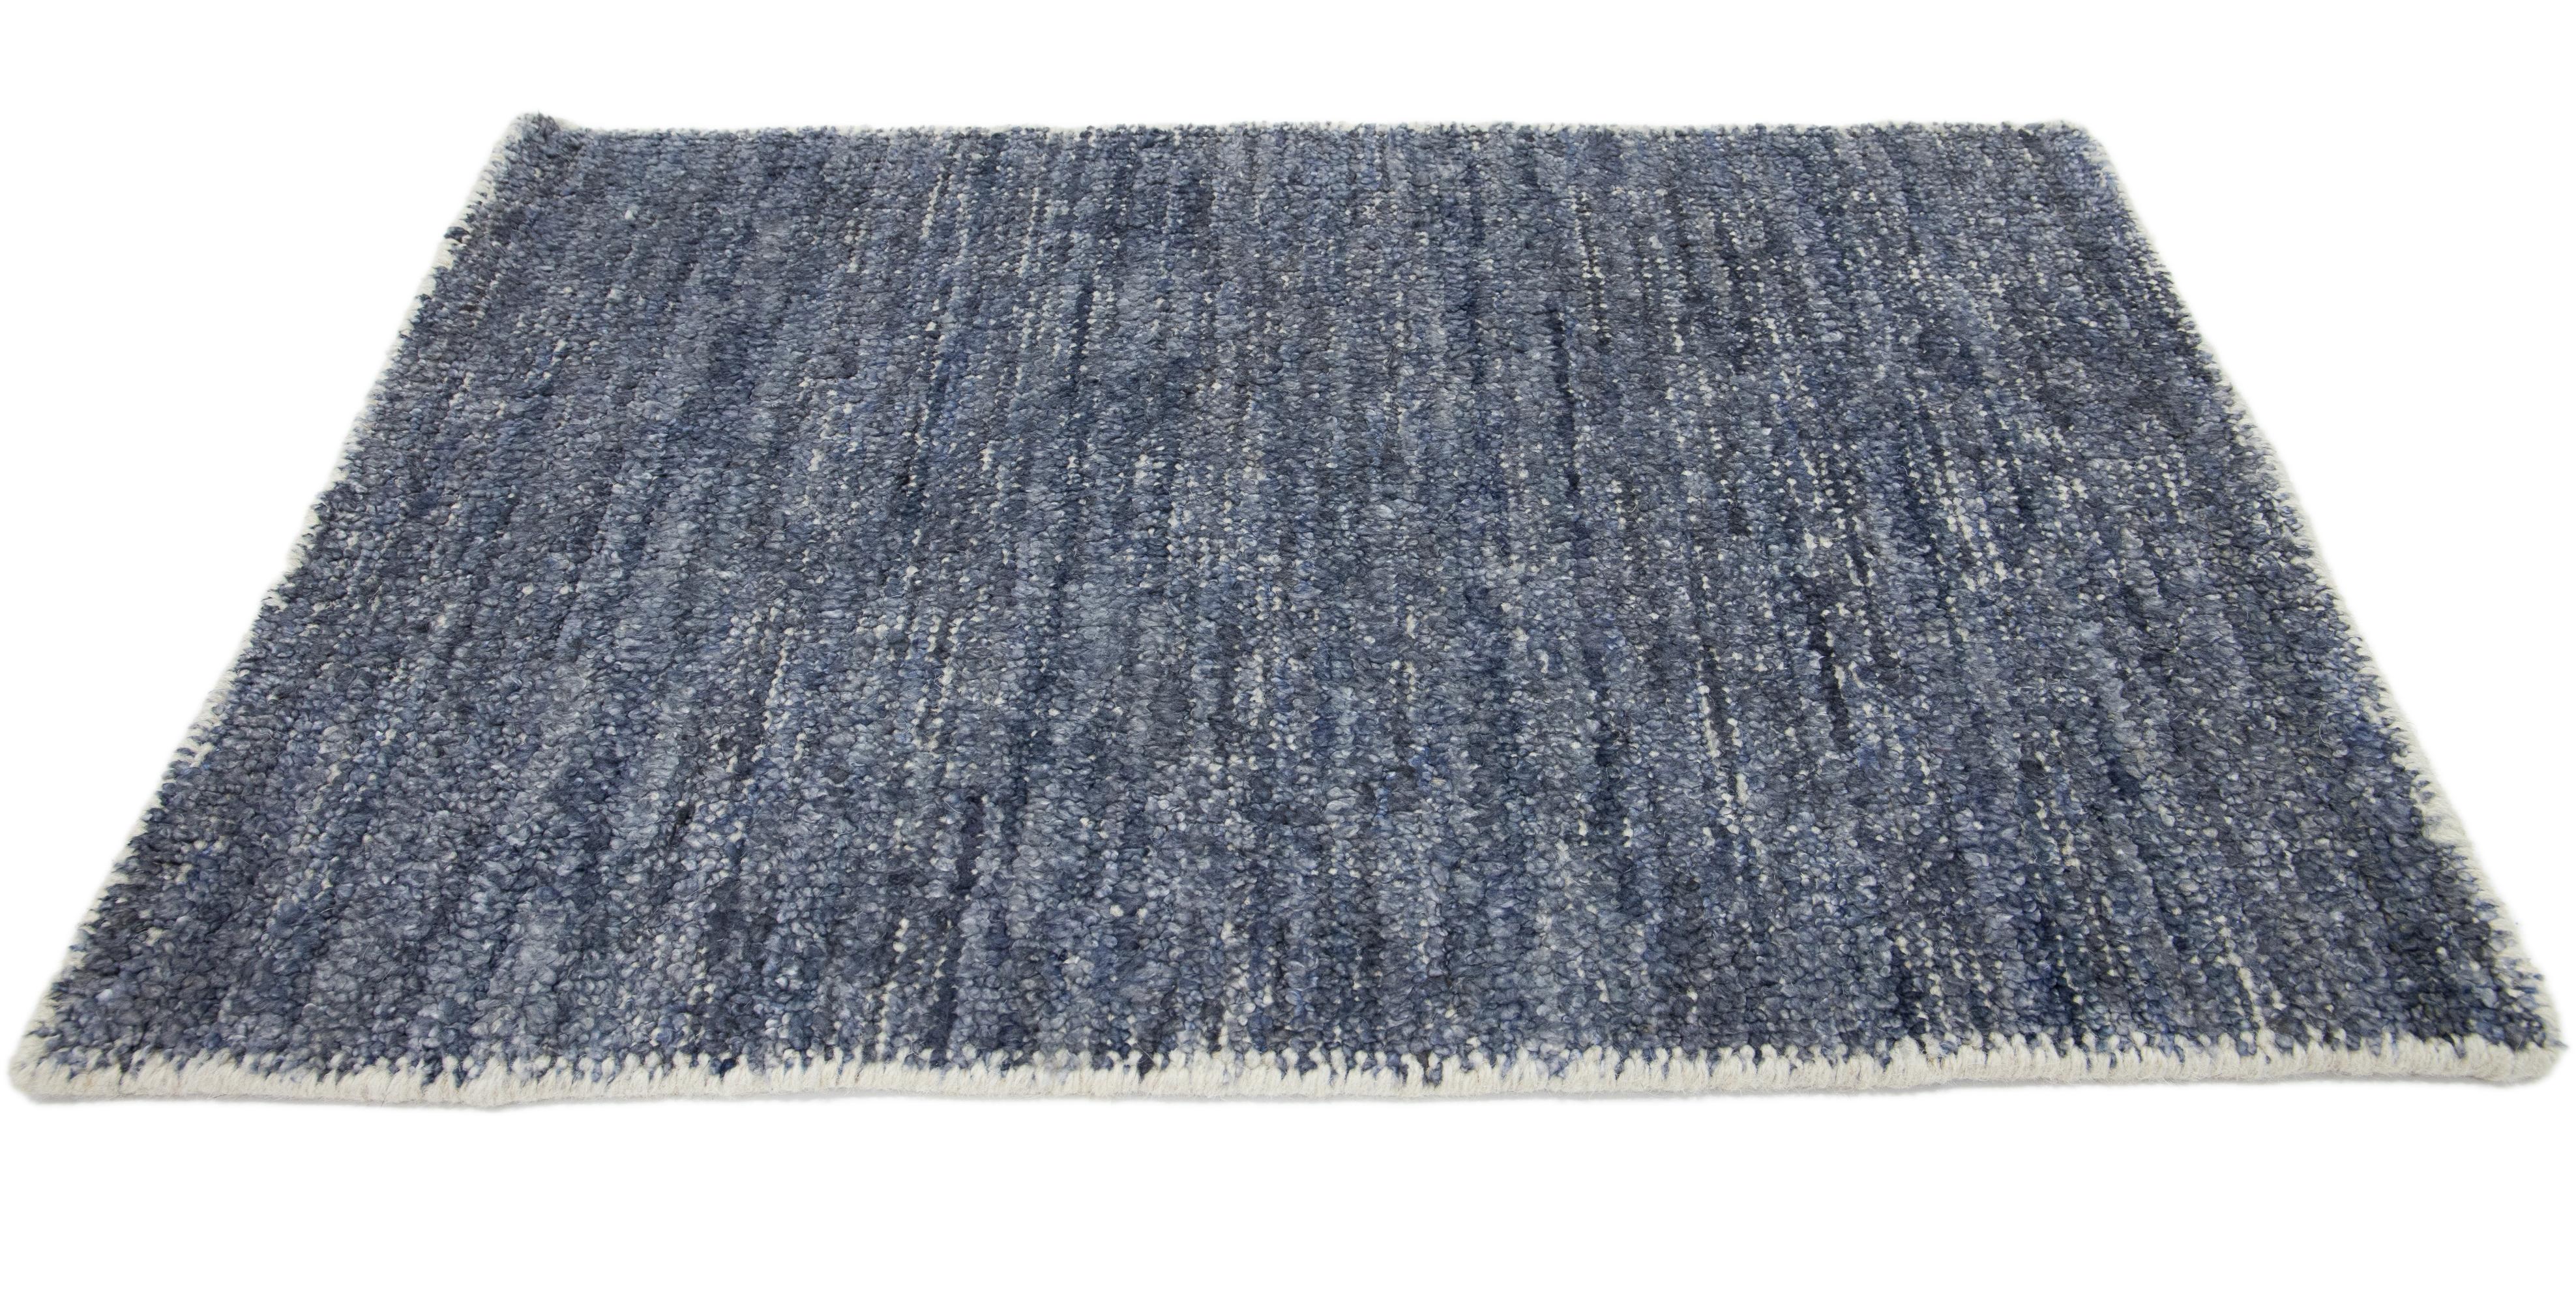 Apadana's Modern Solid Teppich nach Maß. Kundenspezifische Größen und Farben auf Bestellung. 

Material: 65% Viskose, 15% Wolle und 20% Baumwolle.
Techniken: Handgewebt
Stil: Massiv-Modern
Vorlaufzeit: Ca. 15-16 Wochen verfügbar 
Farben: Wie